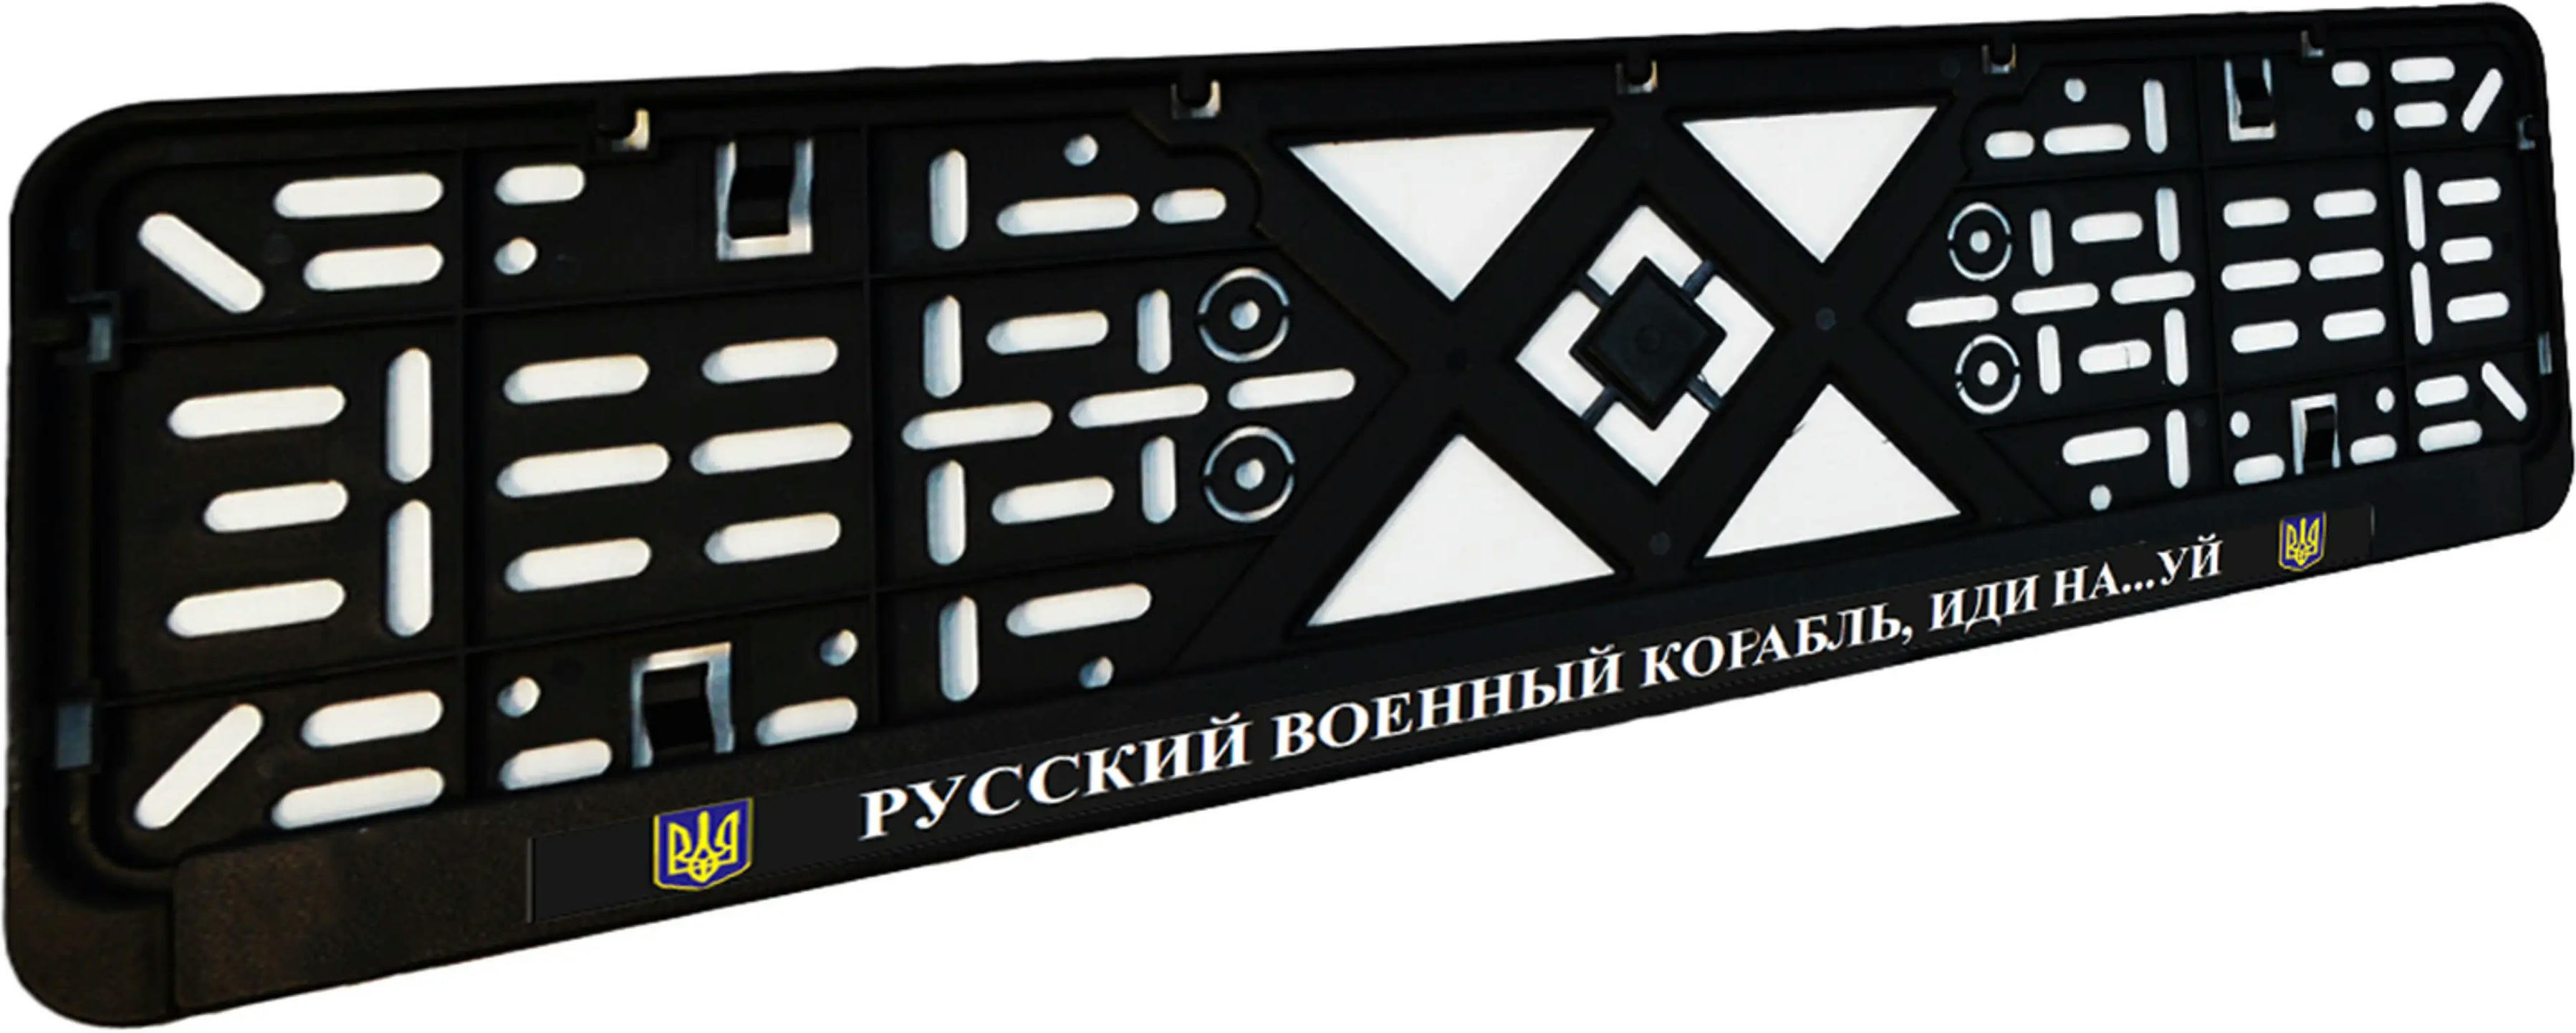 Рамка номерного знака Poputchik пластикова патріотична Російський військовий корабель, йди на…уй (24-266-IS)фото3